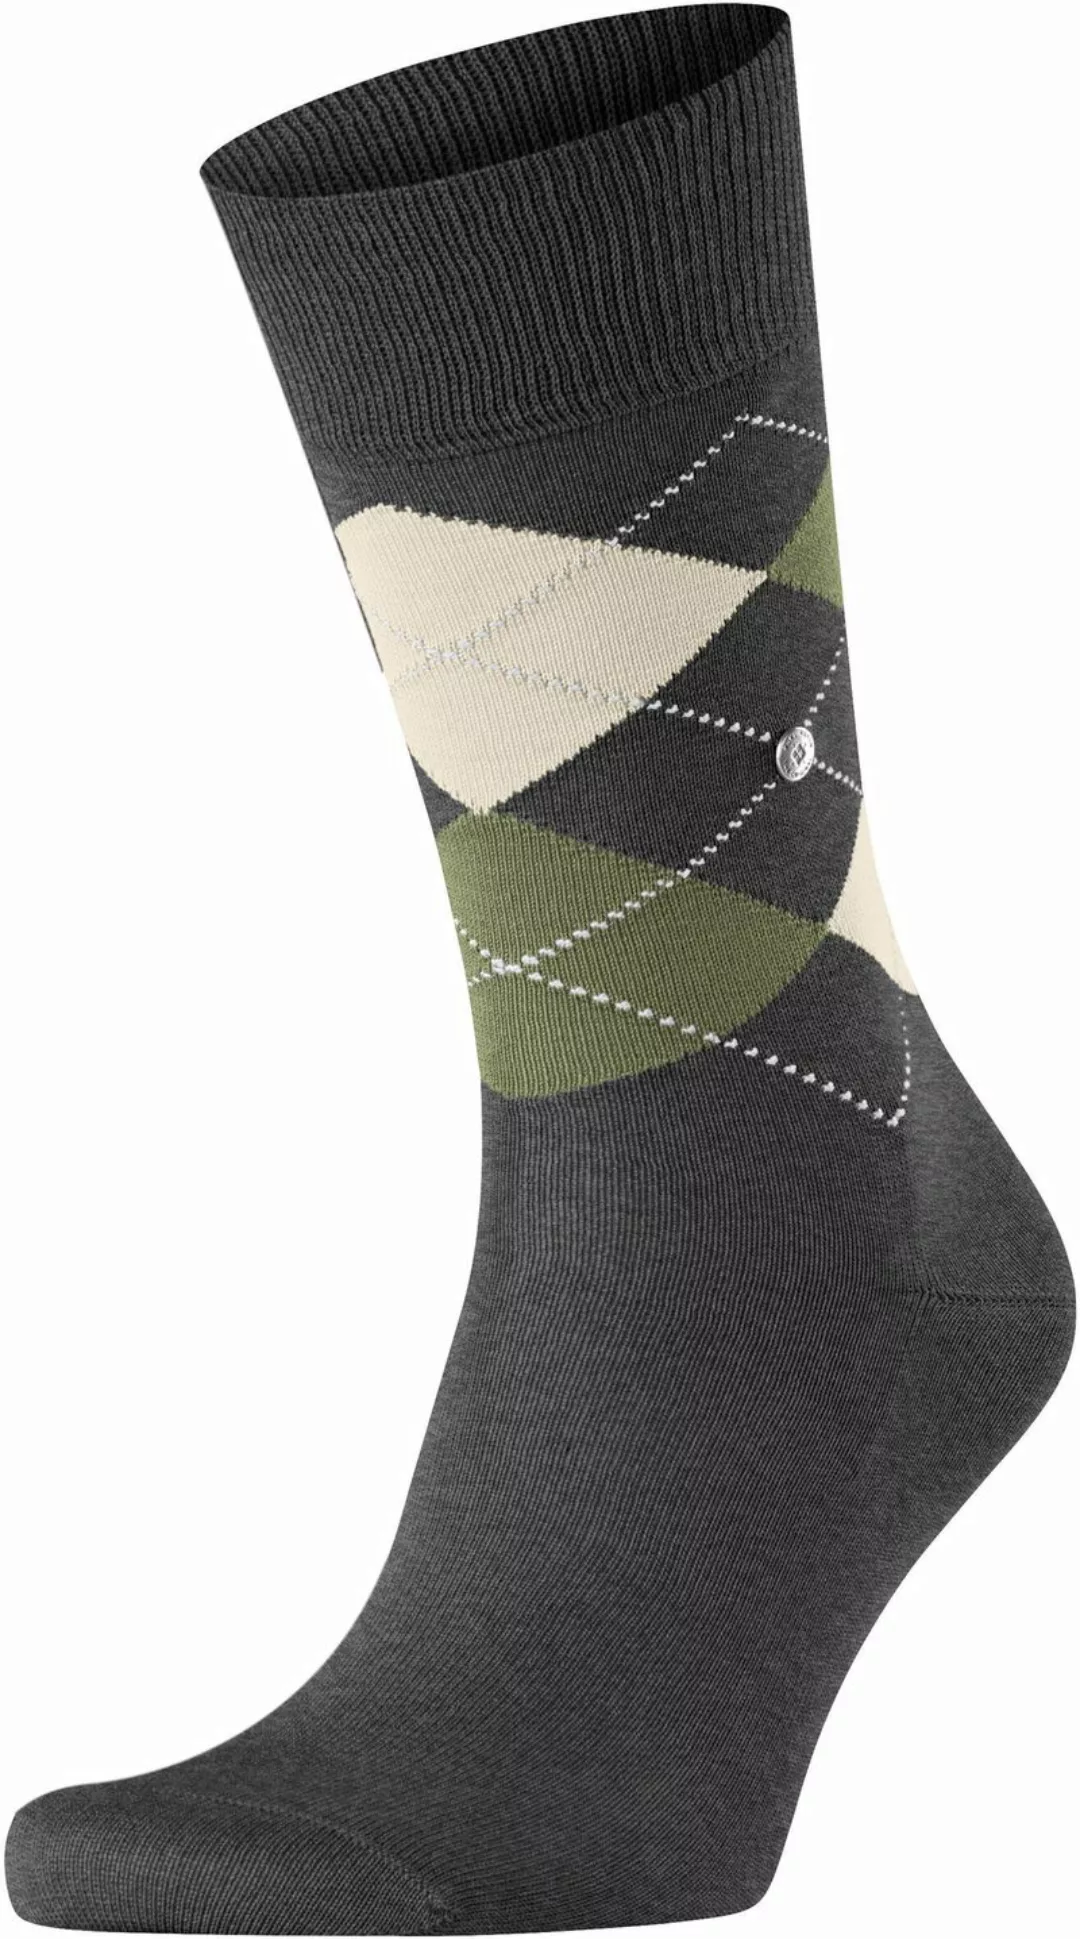 Burlington Manchester Socken Kariert Grau 3098 - Größe 40-46 günstig online kaufen